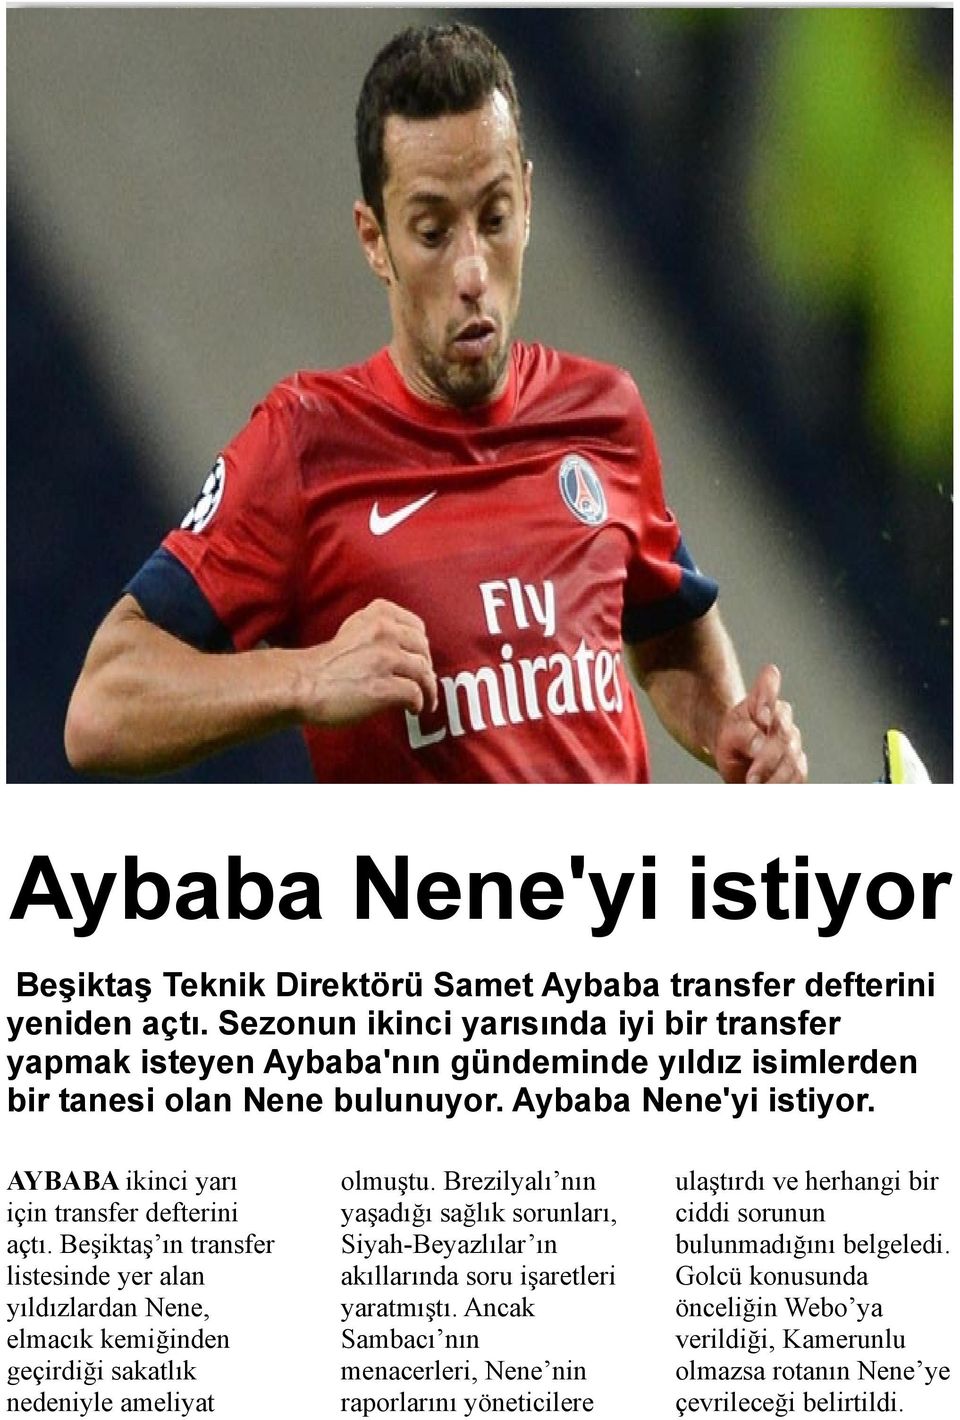 AYBABA ikinci yarı için transfer defterini açtı. Beşiktaş ın transfer listesinde yer alan yıldızlardan Nene, elmacık kemiğinden geçirdiği sakatlık nedeniyle ameliyat olmuştu.